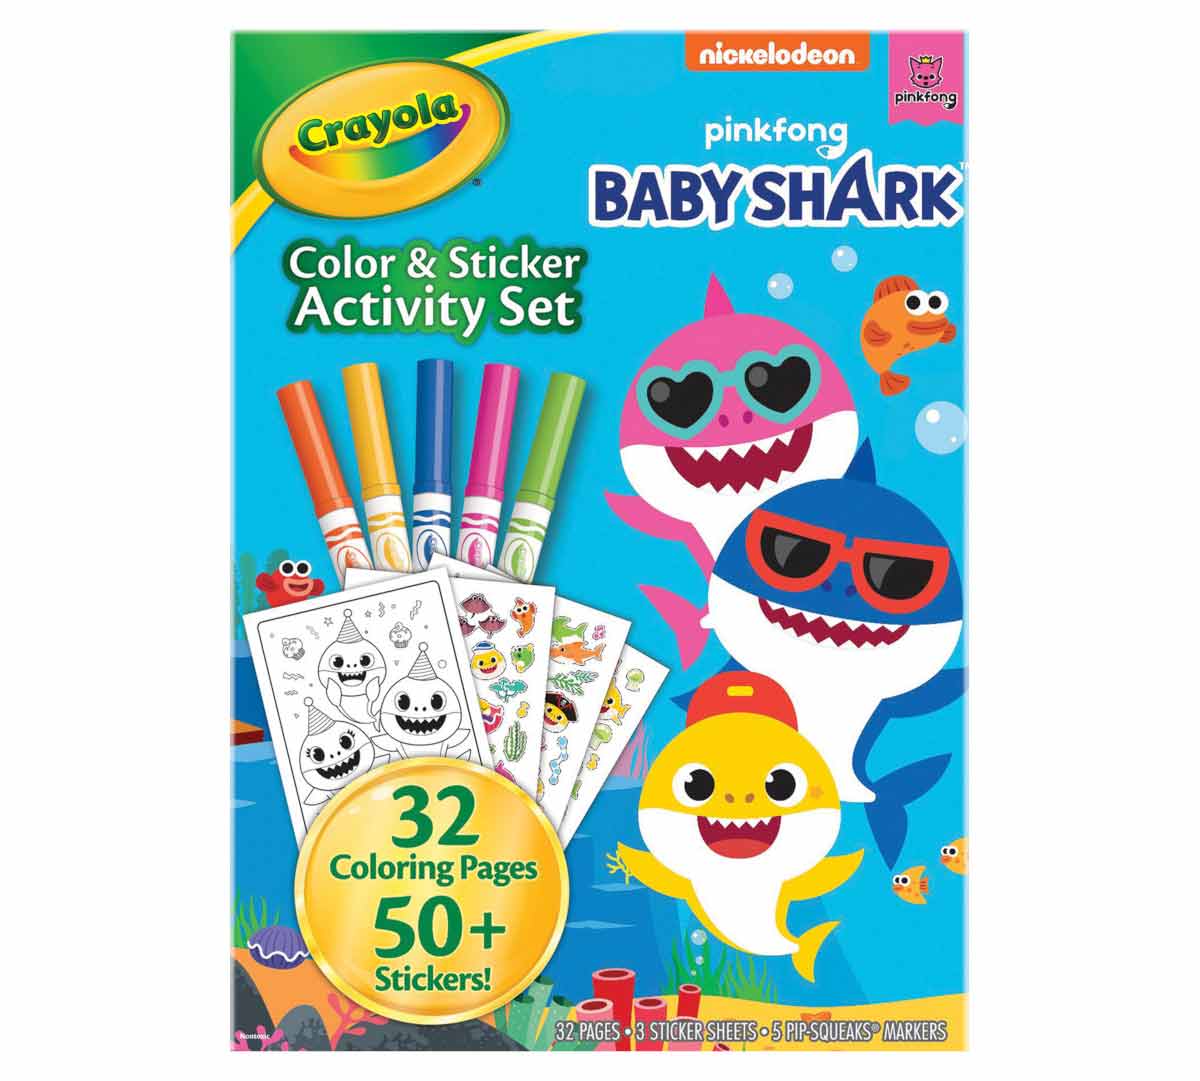 https://shop.crayola.com/on/demandware.static/-/Sites-crayola-storefront/default/dw9f61d4b6/images/04-2742_Color-&-Sticker-Activity-Foldalope_BabyShark_PDP_02.jpg